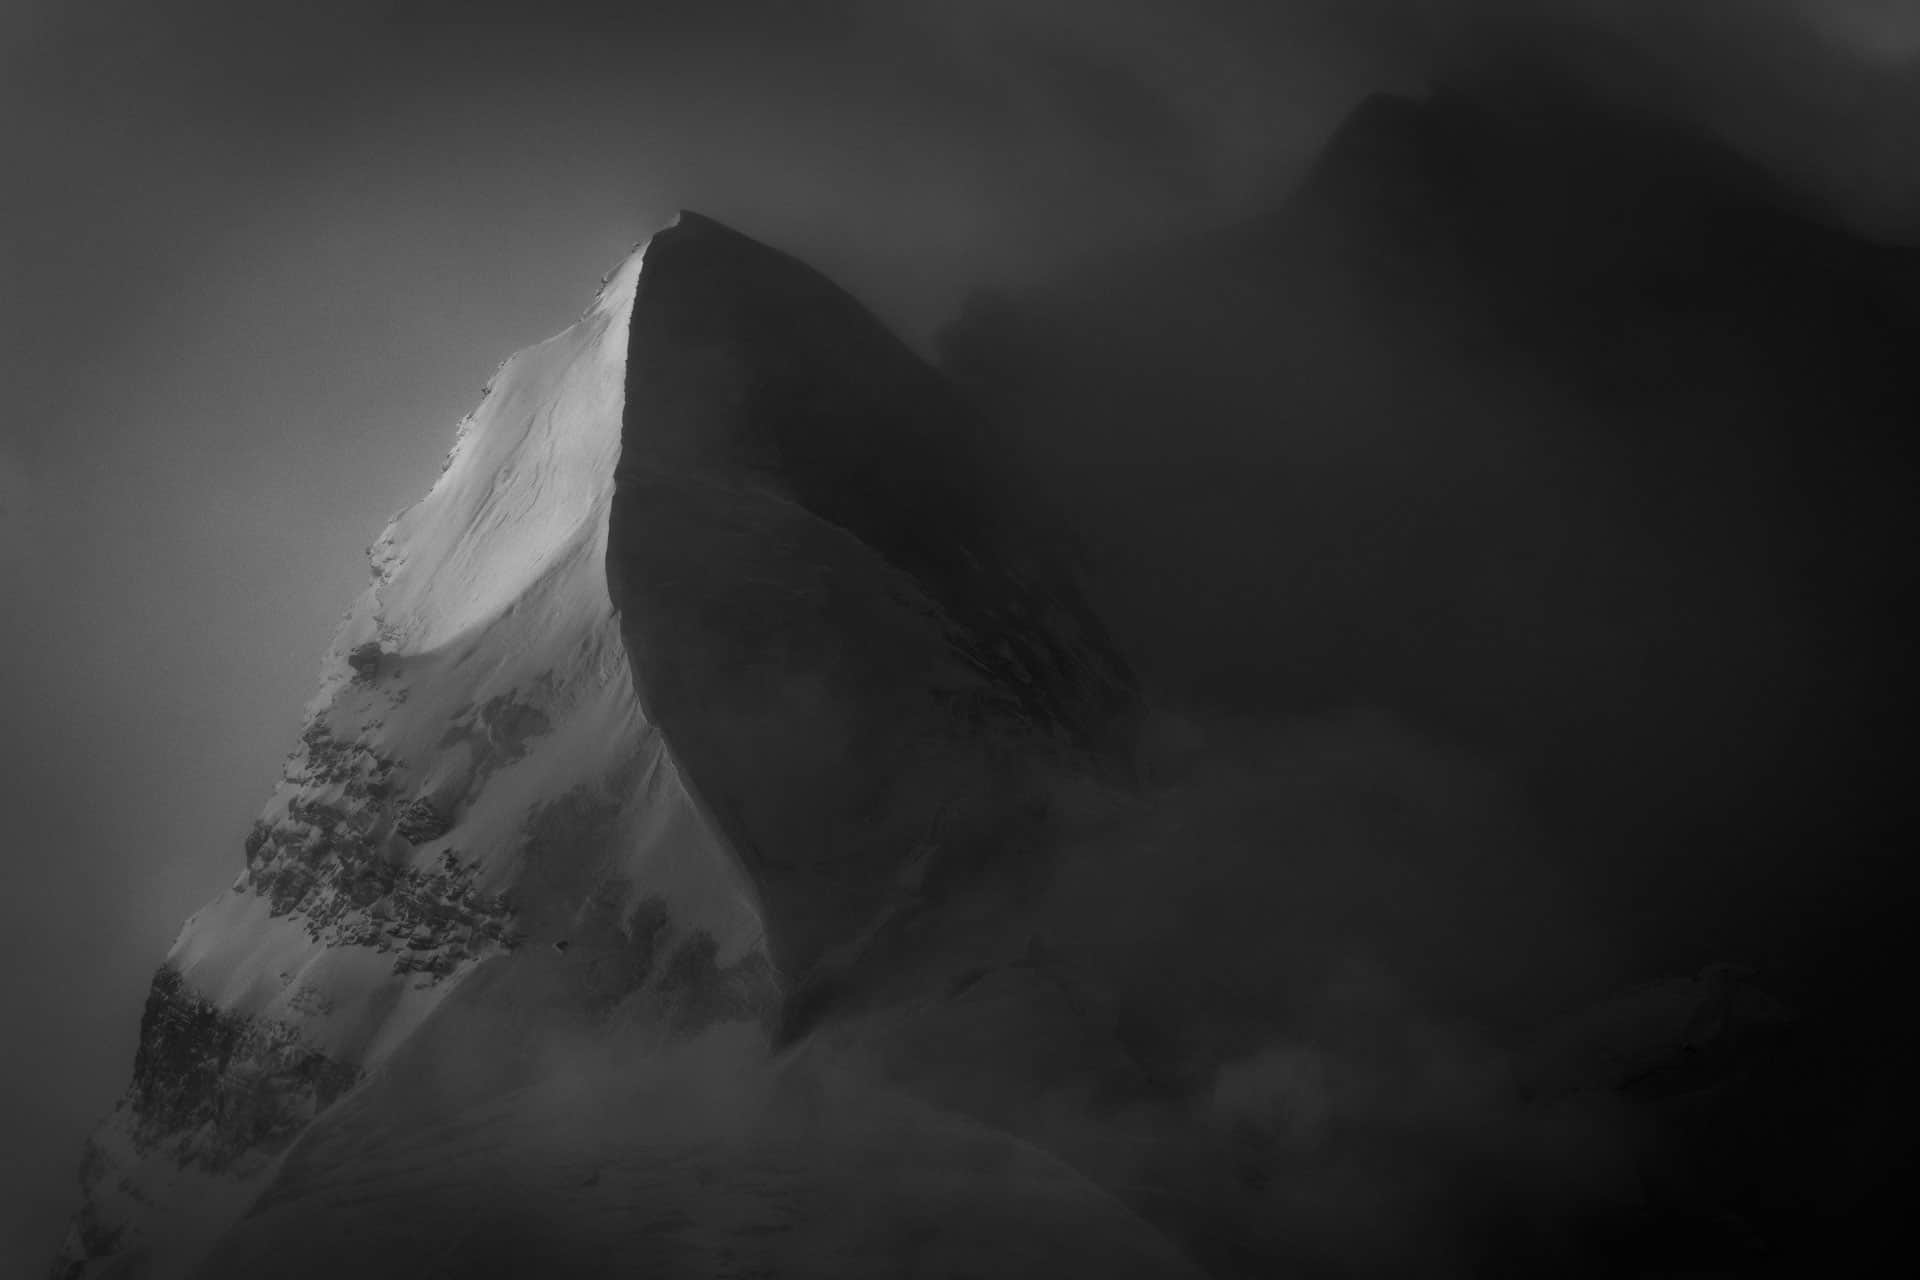 Schneebedeckter Gipfel in einem Meer aus Wolken - Schnee und Sonne Bergmassiv in Schwarz-Weiß - Aiguille du Croissant - Grand Combin de Verbier